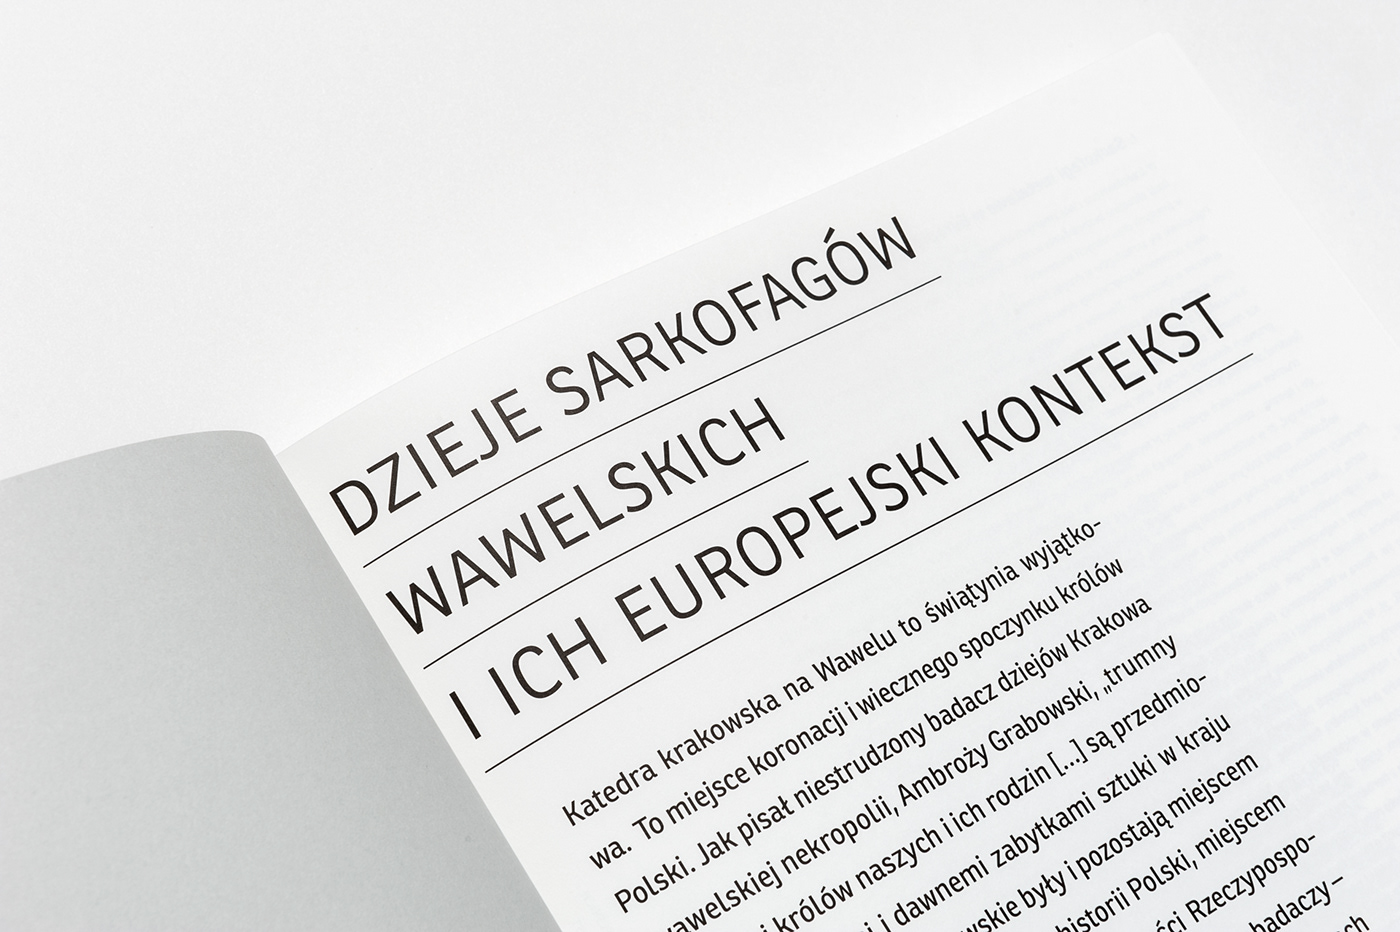 Dizajn edytorstwo Grphic Design publikacja skład typografia typography   zdjęcia